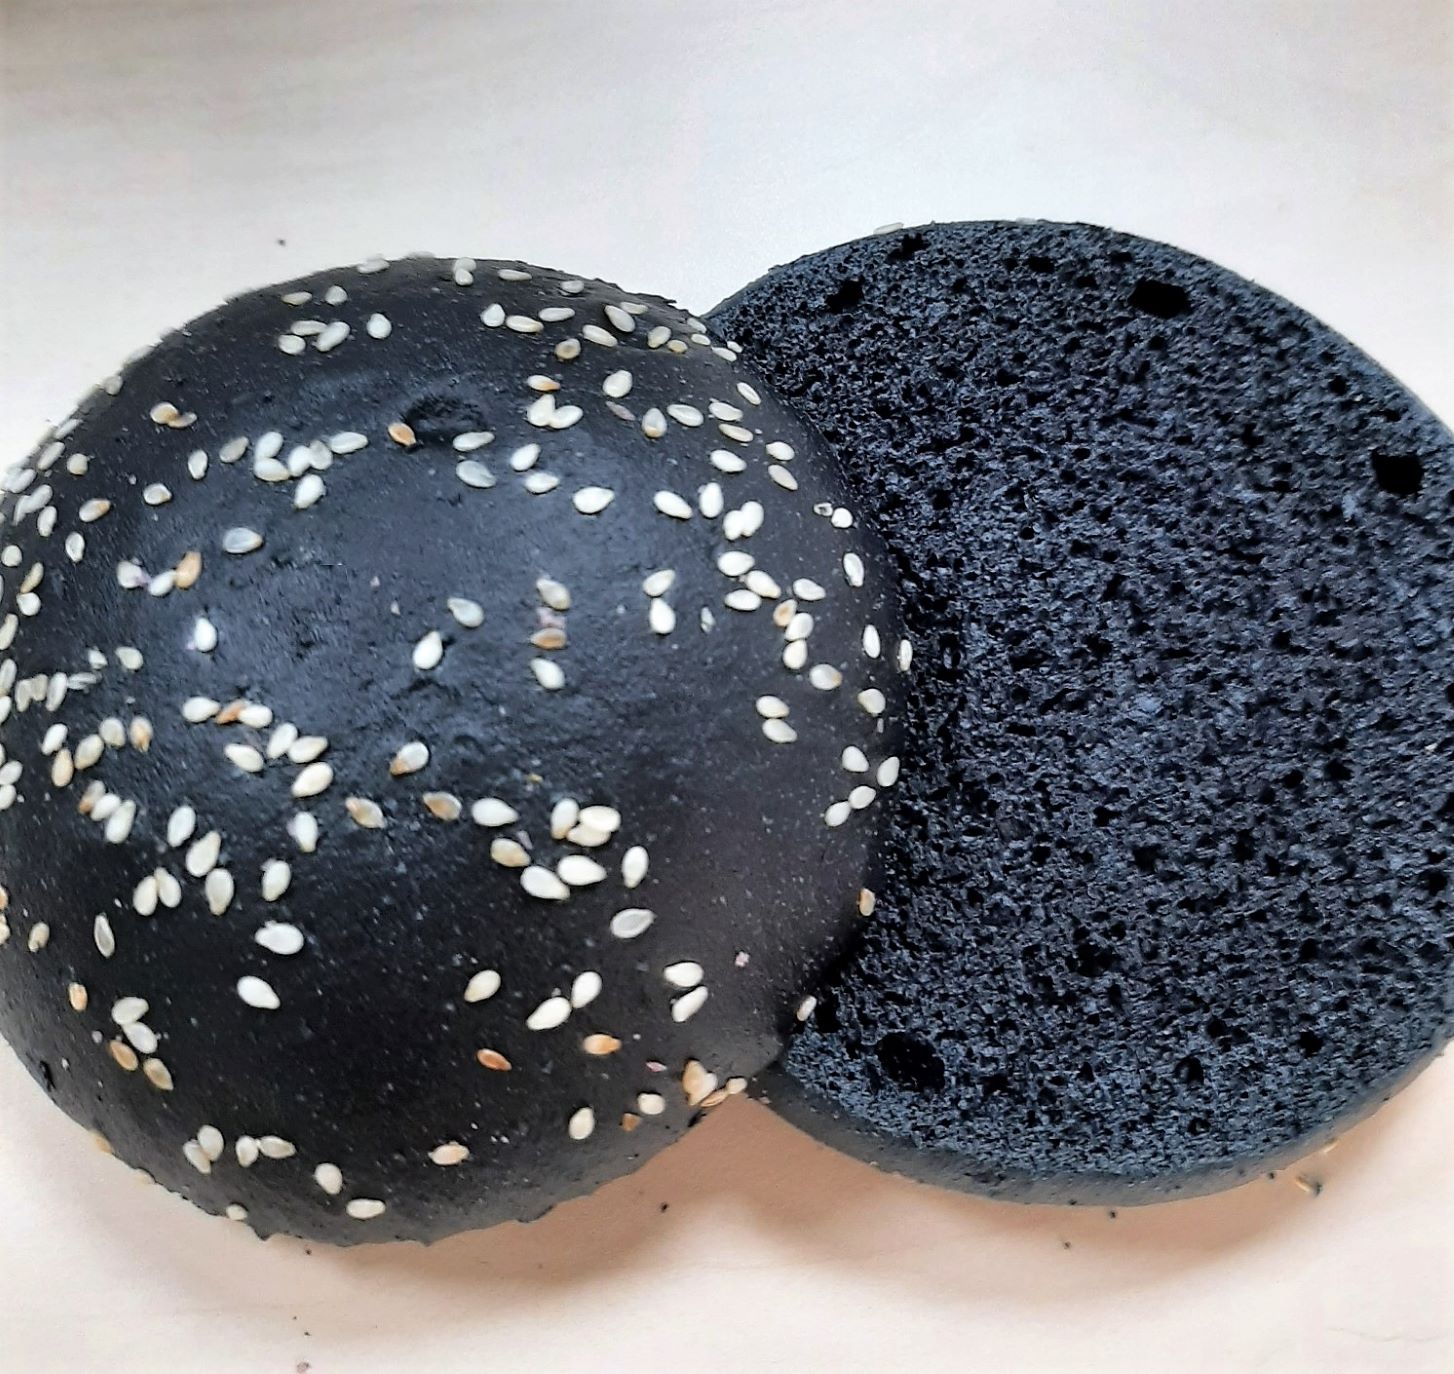     Pan Hamburguesa negro al carbón 70 Gr-10,5 cm. Pre-cortado